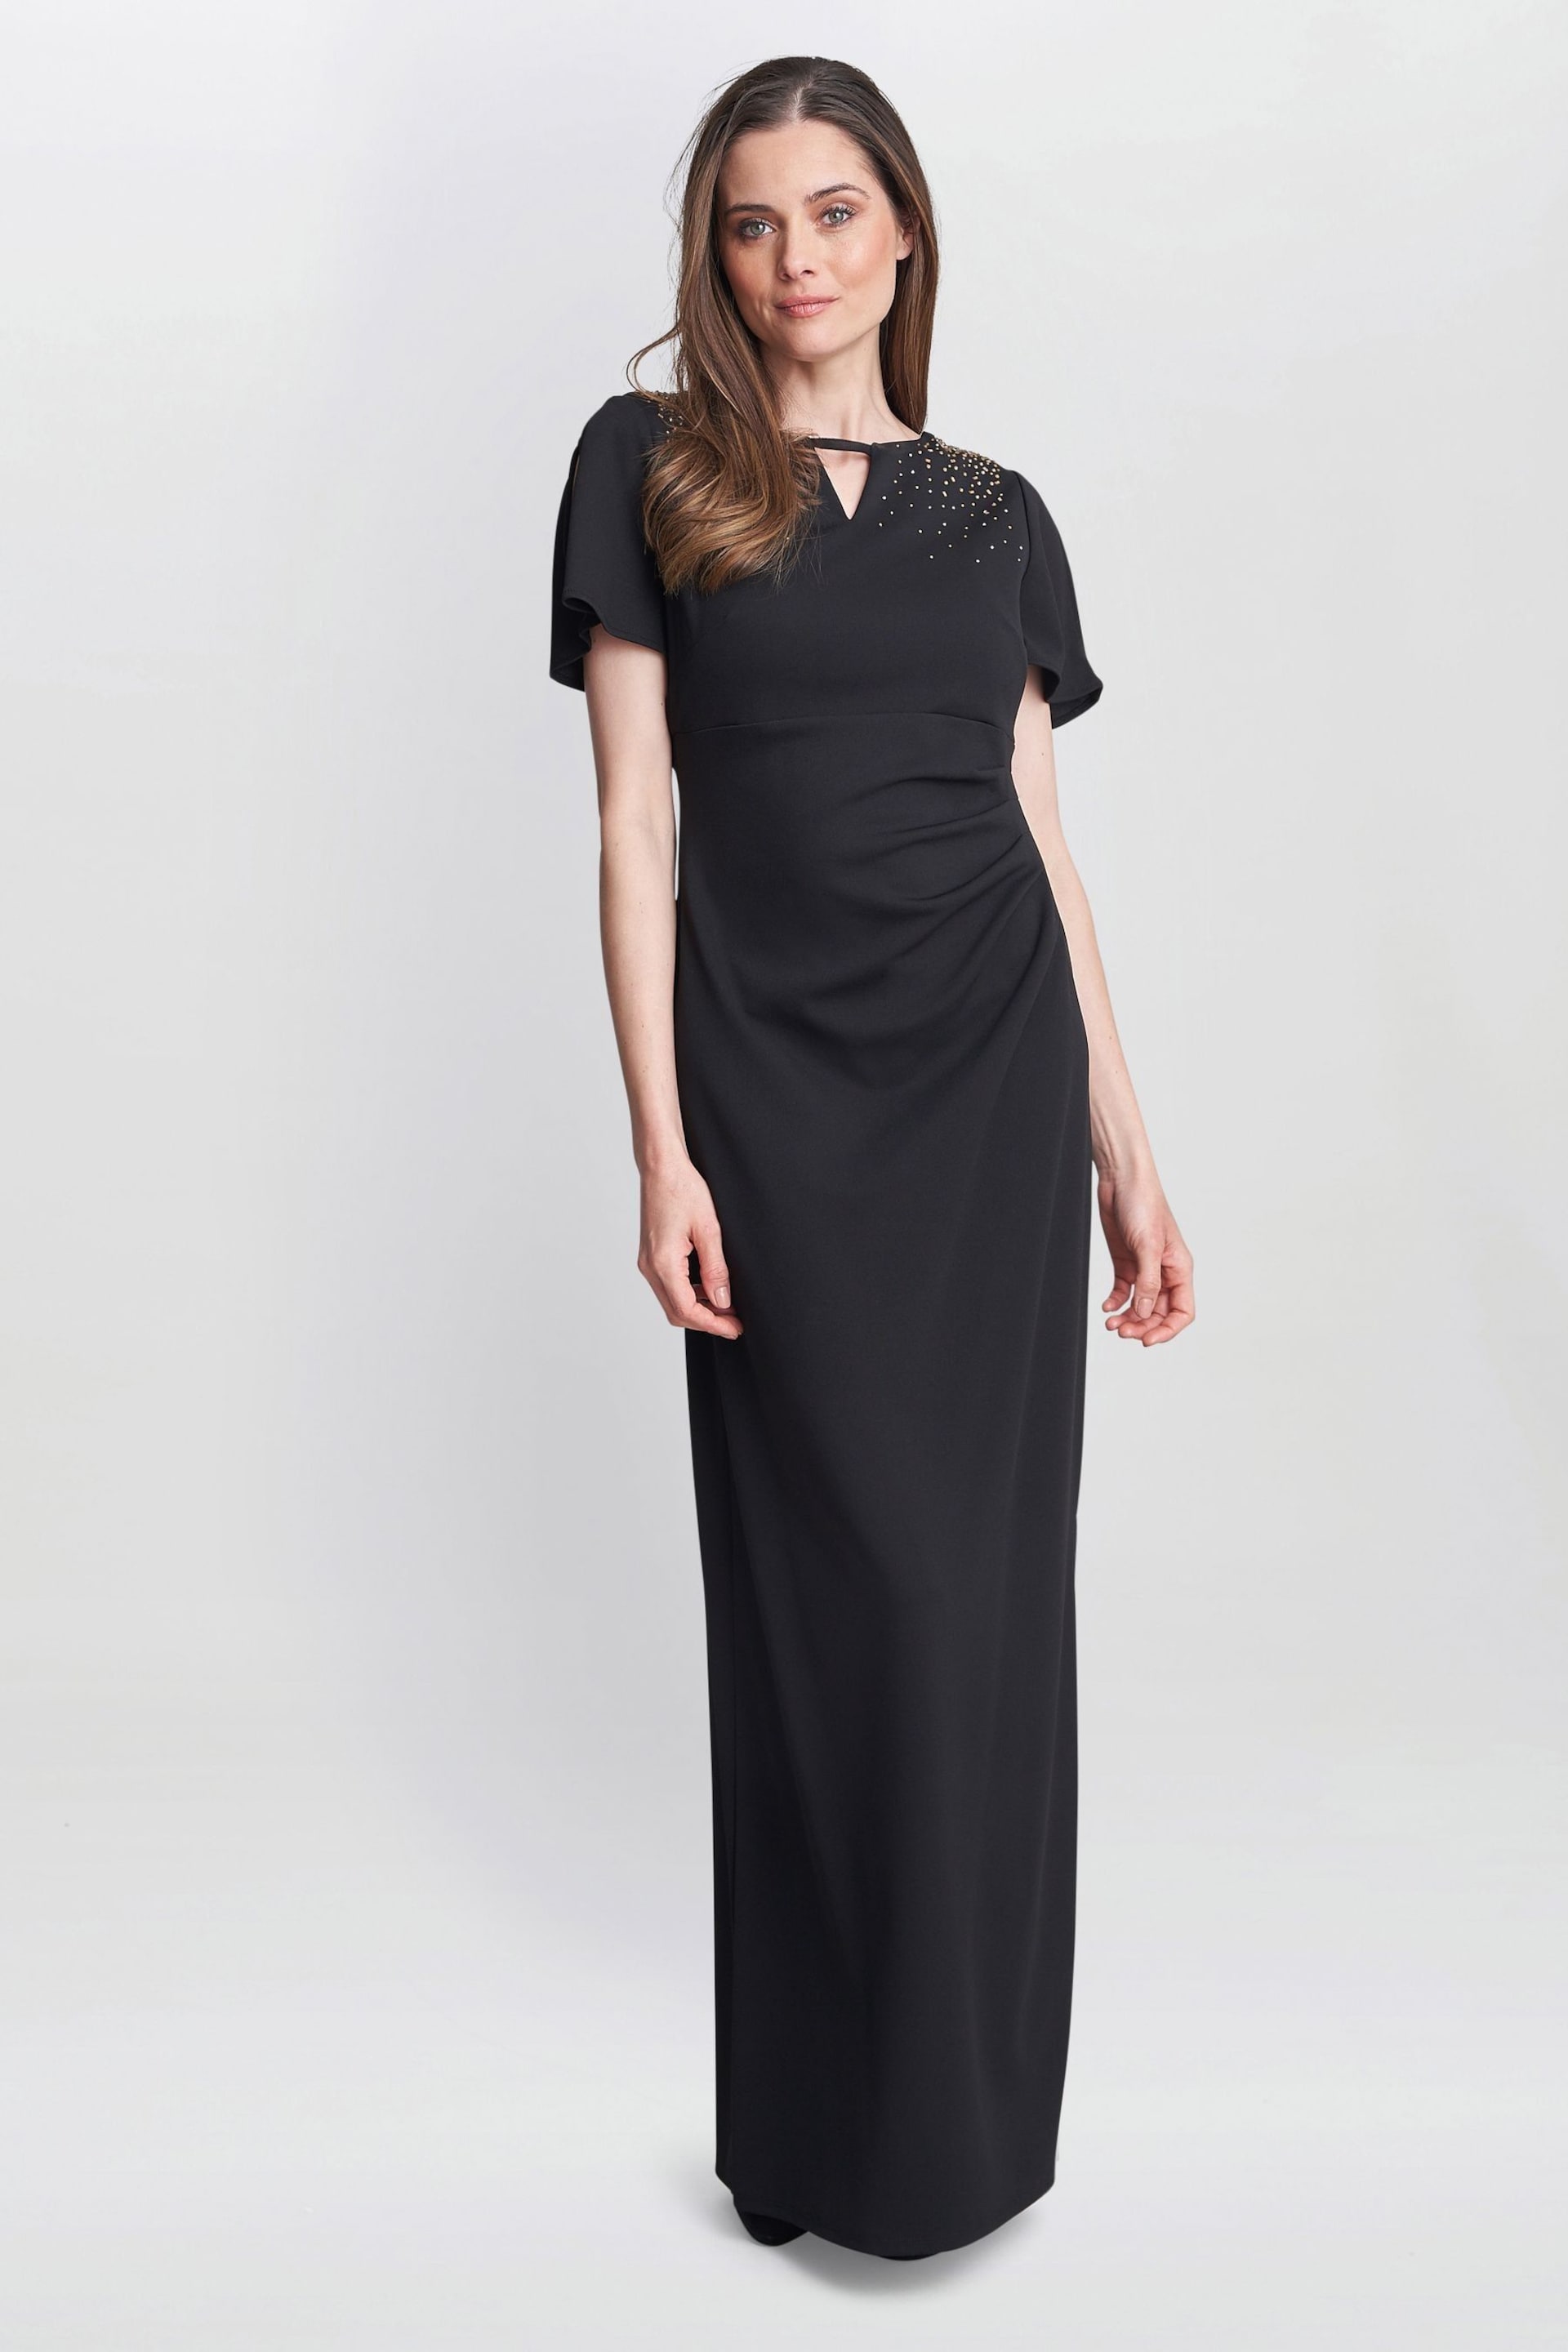 Gina Bacconi Betsy Maxi Black Dress With Keyhole Neck - Image 1 of 6